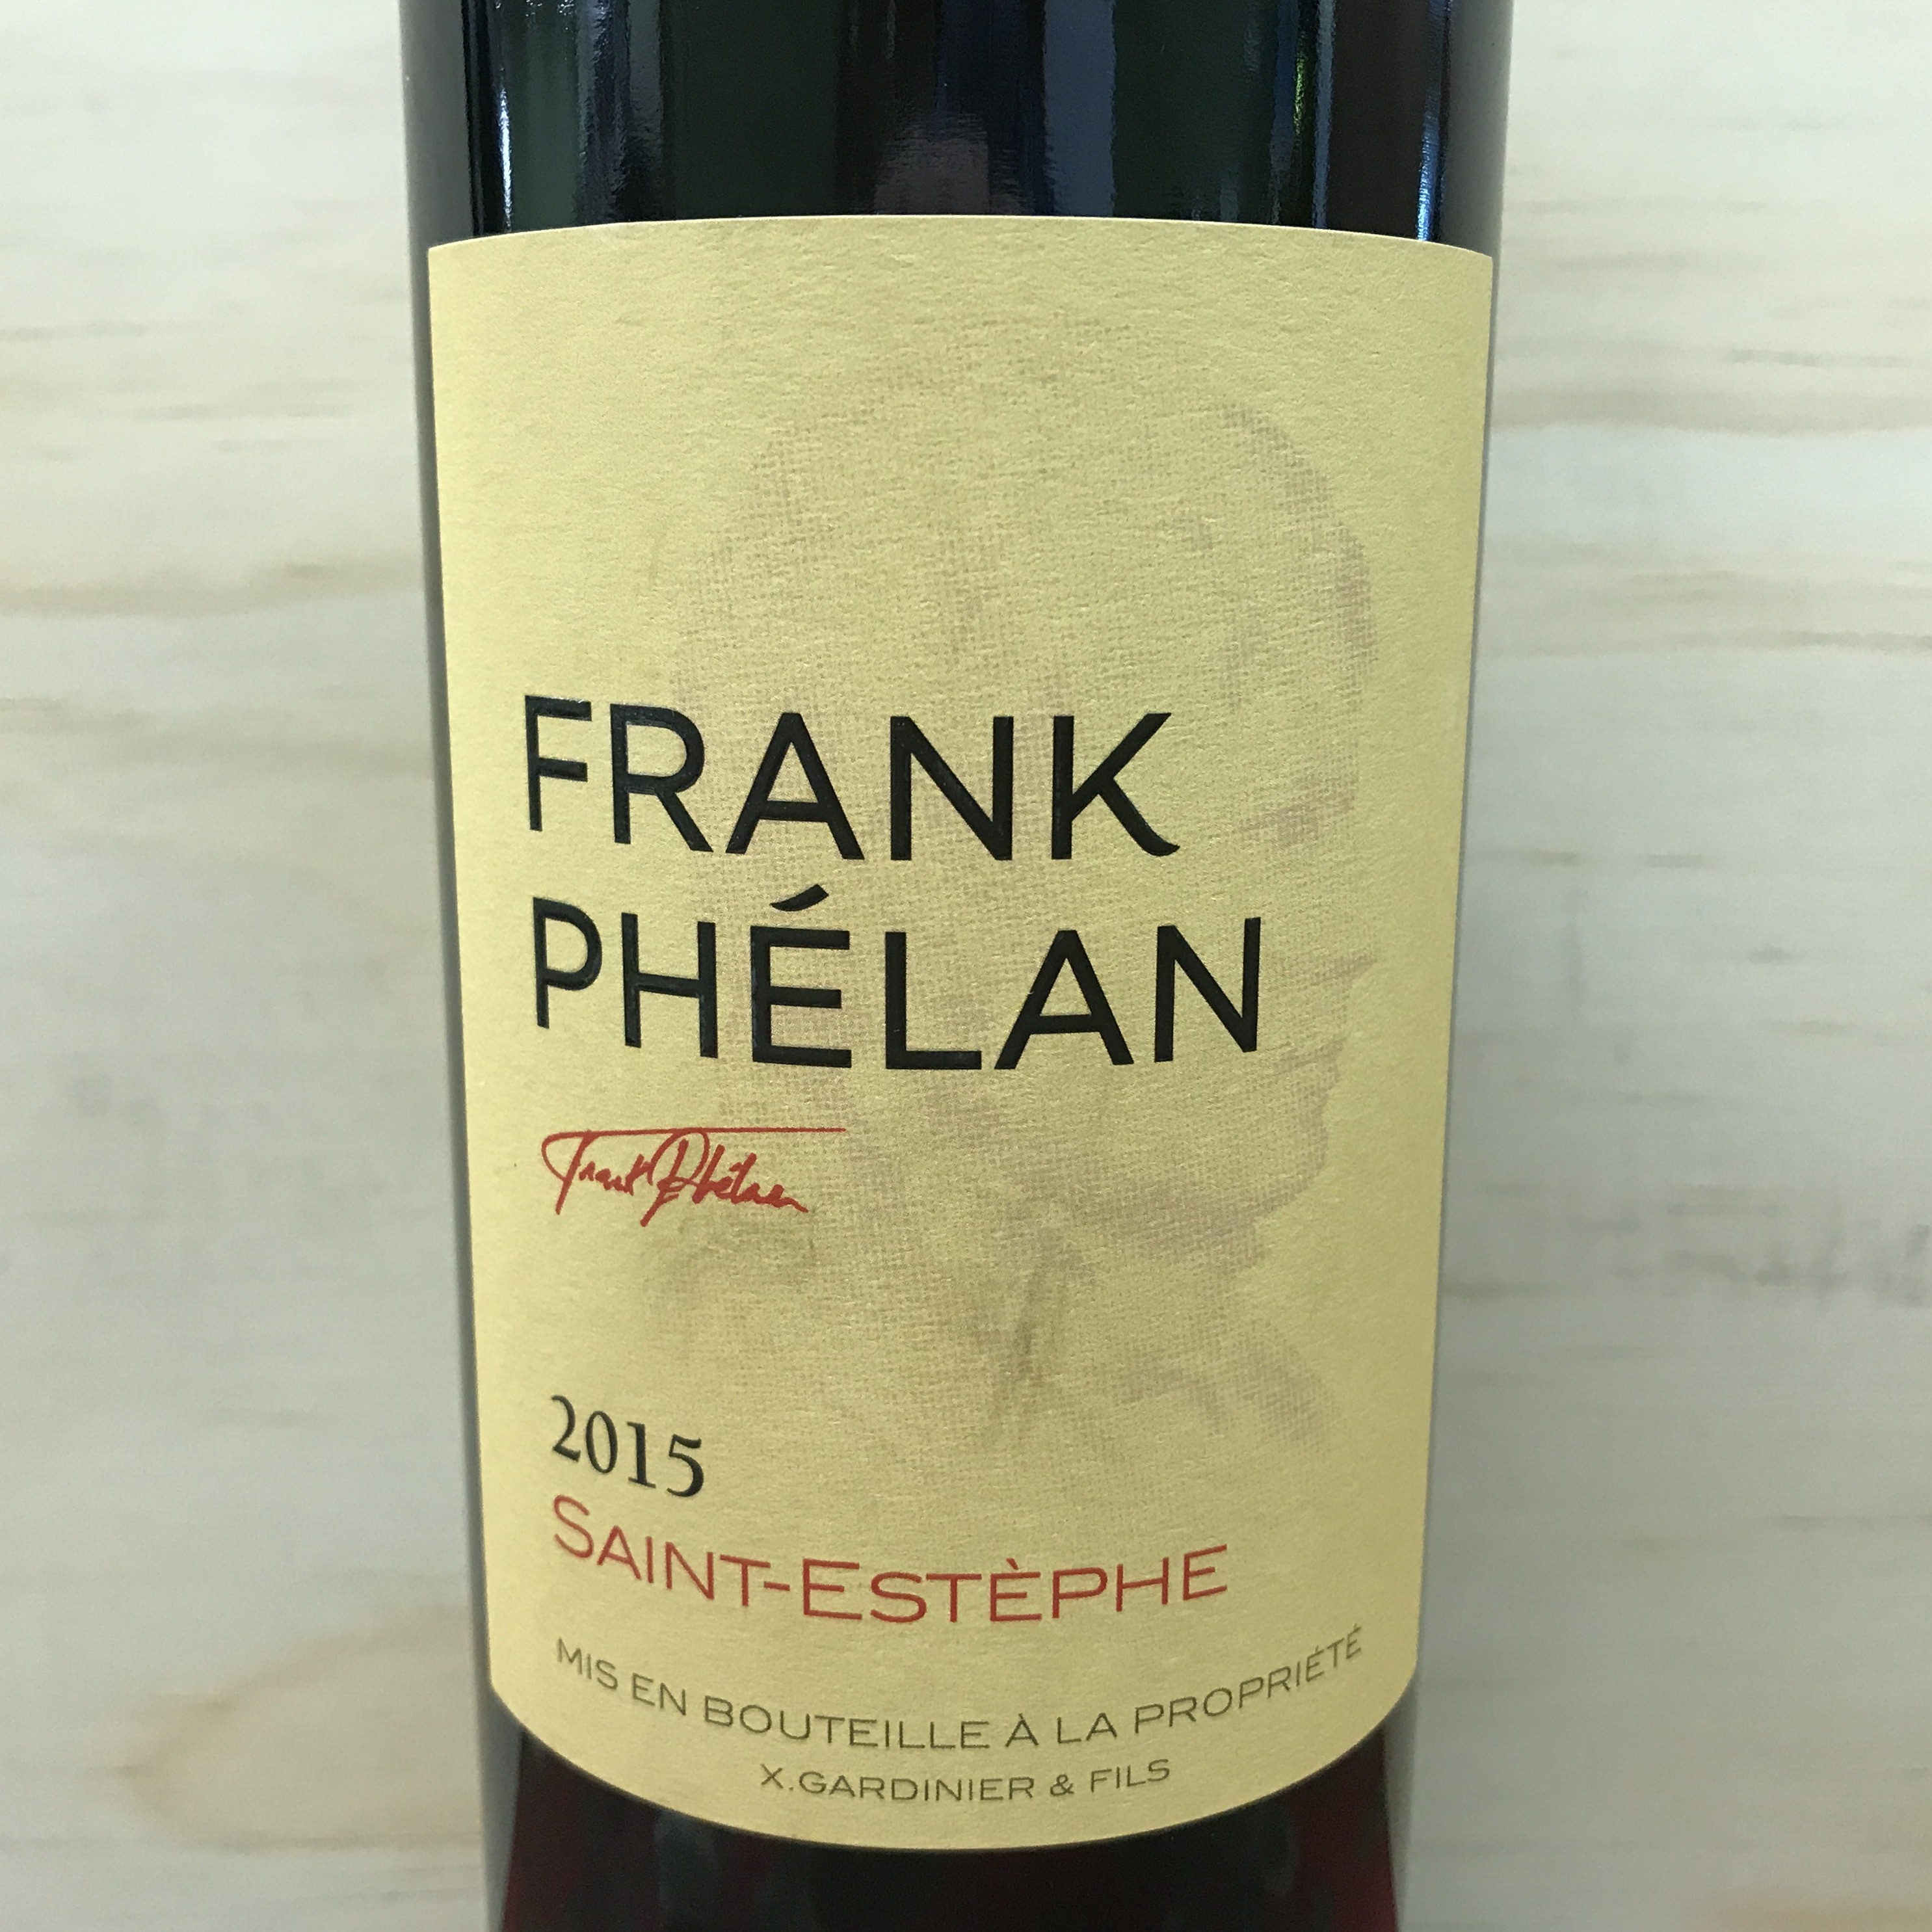 Frank Phelan Saint Estephe 2015